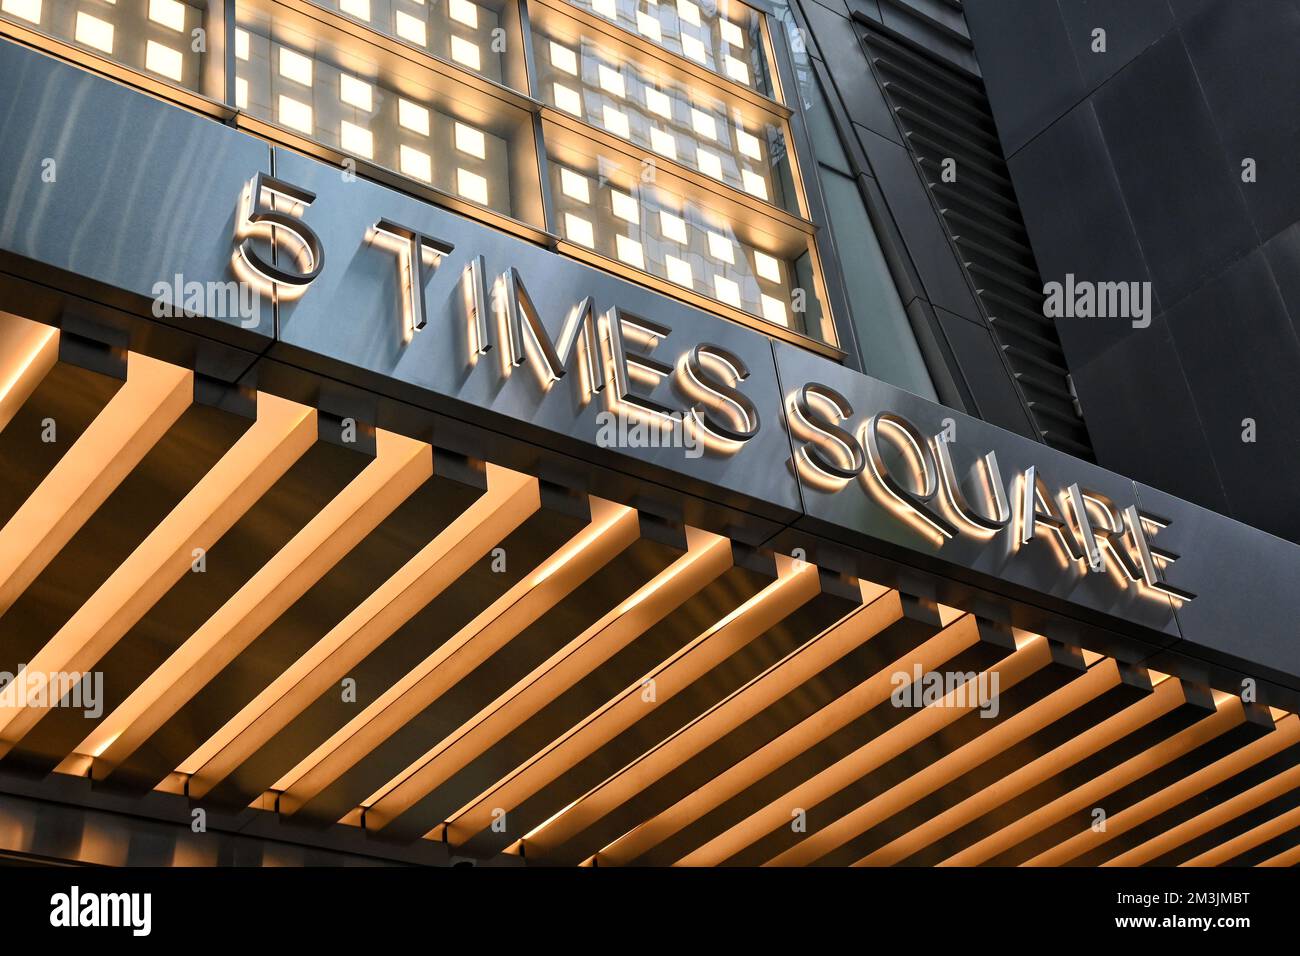 NEW YORK - 25 octobre 2022 : panneau au 5 Times Square, un gratte-ciel de 38 étages situé à l'extrémité sud de Times Square, le Midtown Manhattan. Banque D'Images